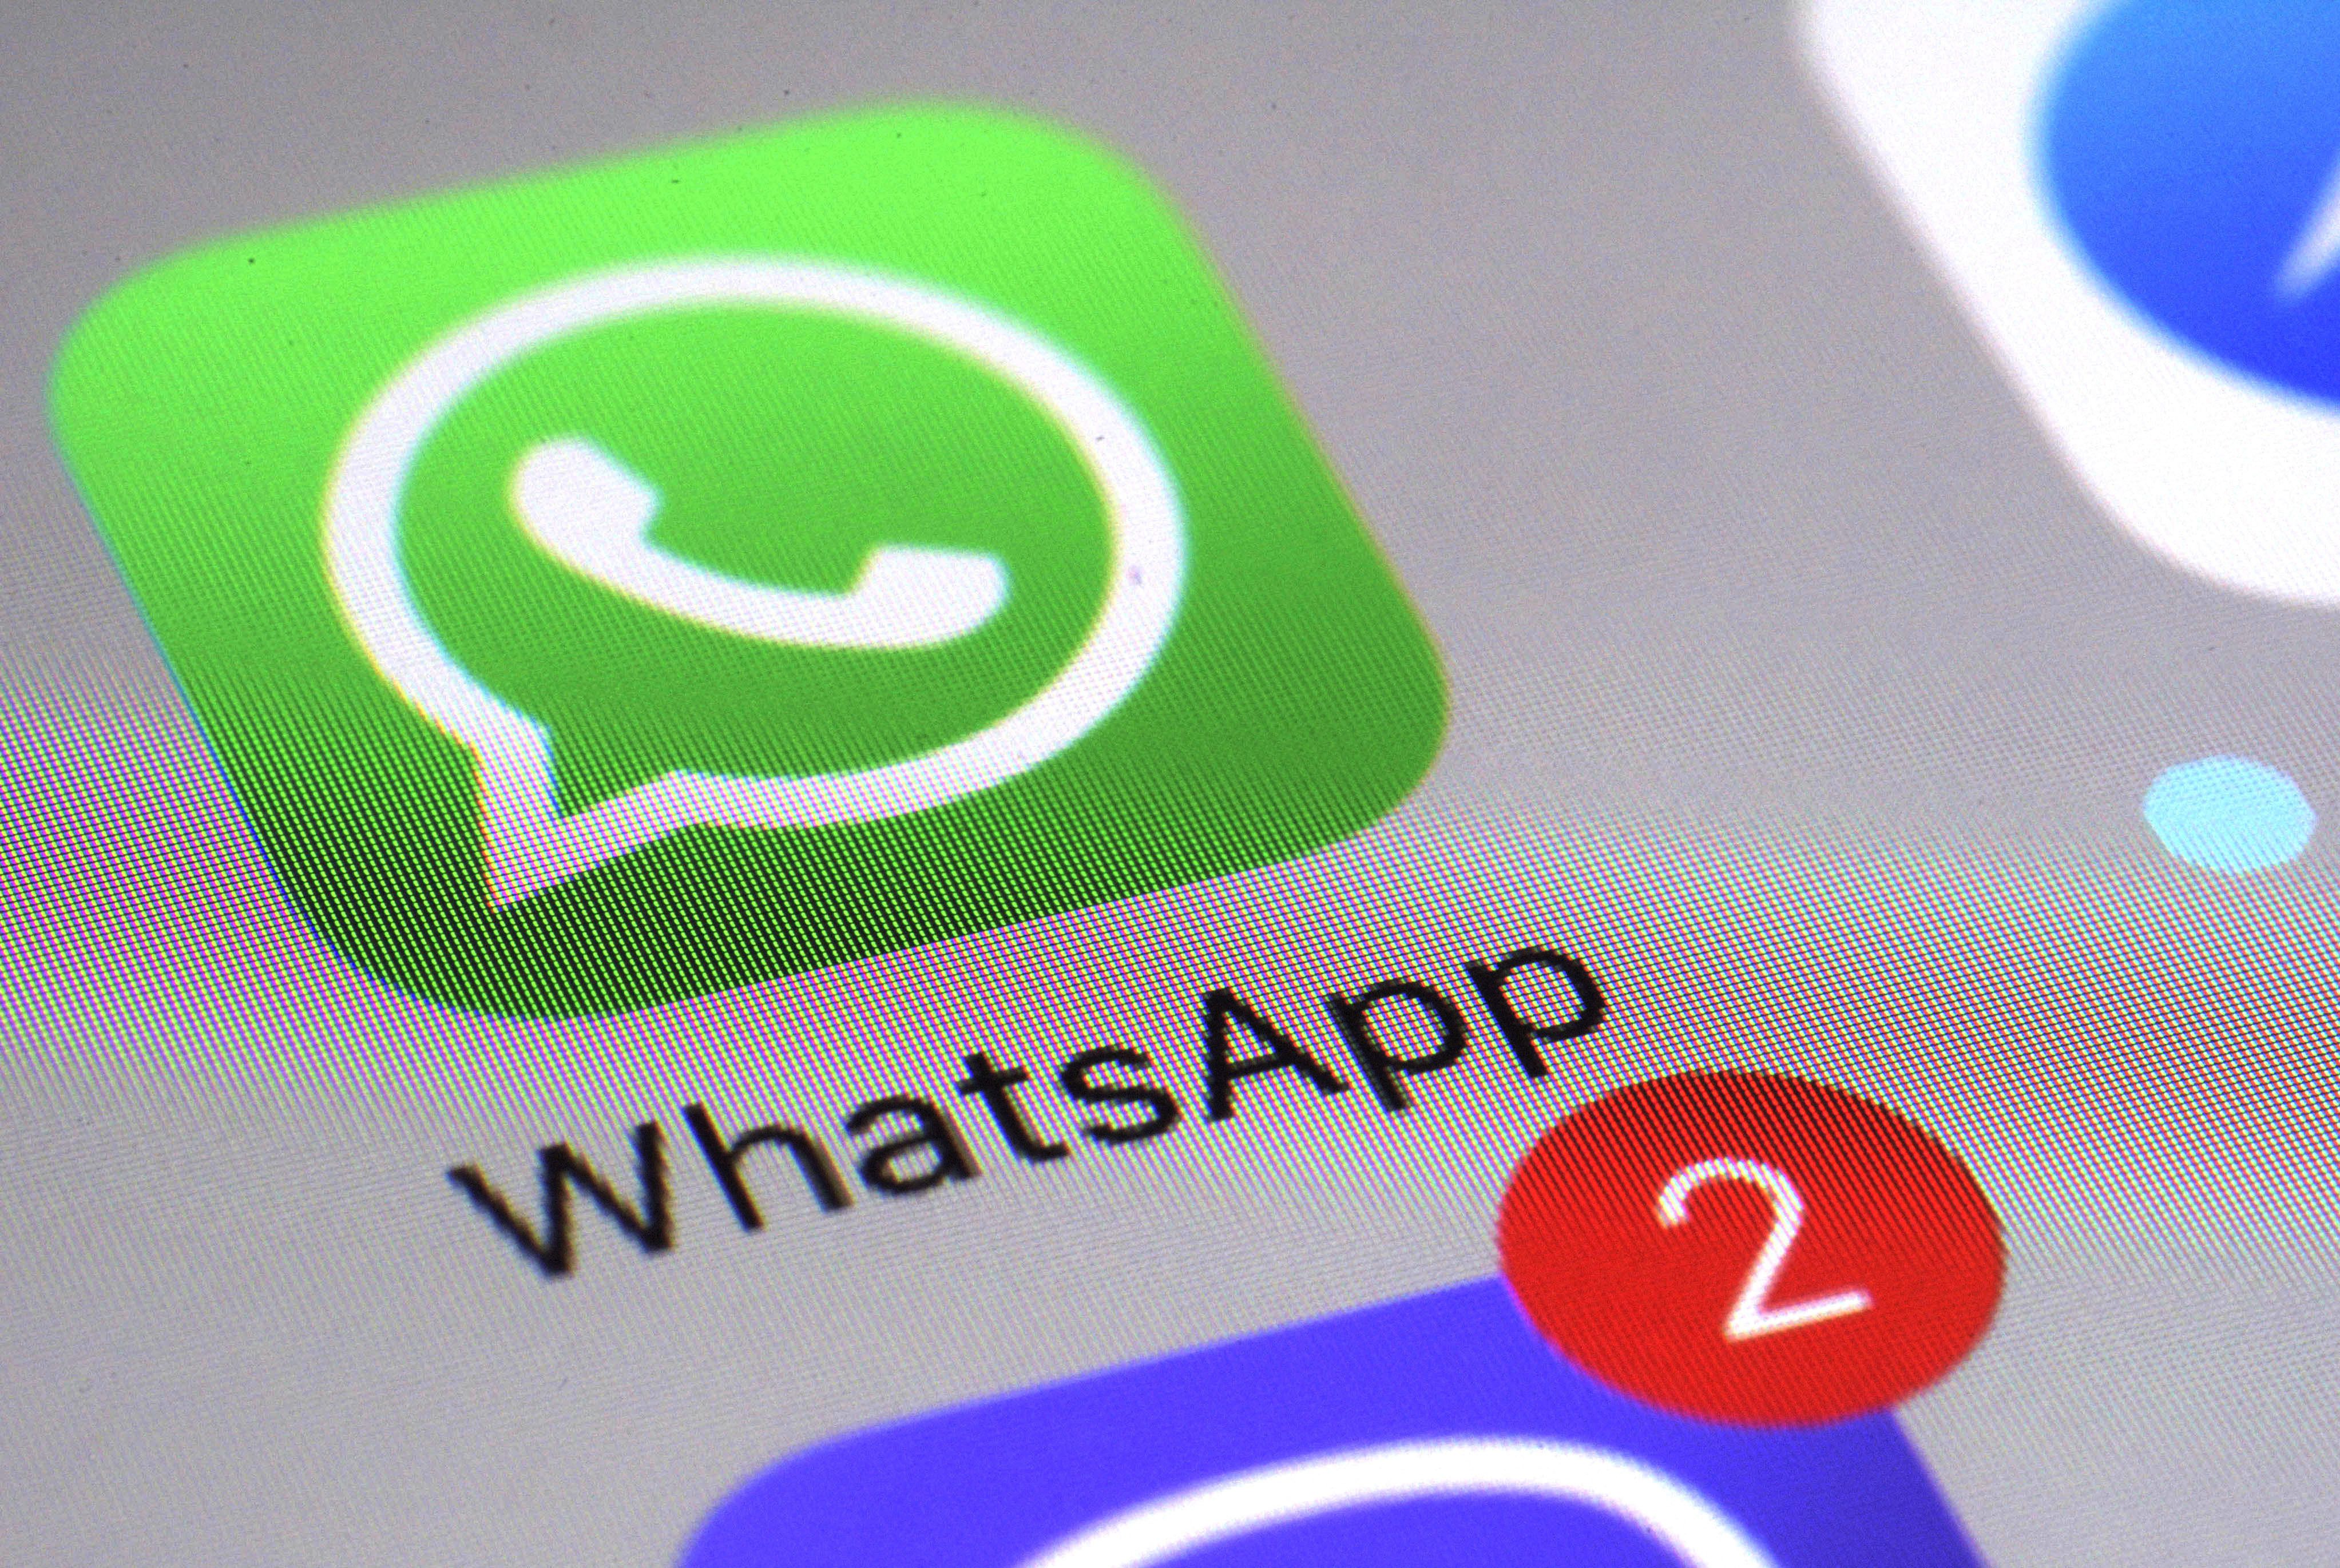 La nueva sección web de WhatsApp brindará consejos actualizados sobre cómo proteger una cuenta y el contenido de las conversaciones en la aplicación. (AP Foto/Patrick Sison)